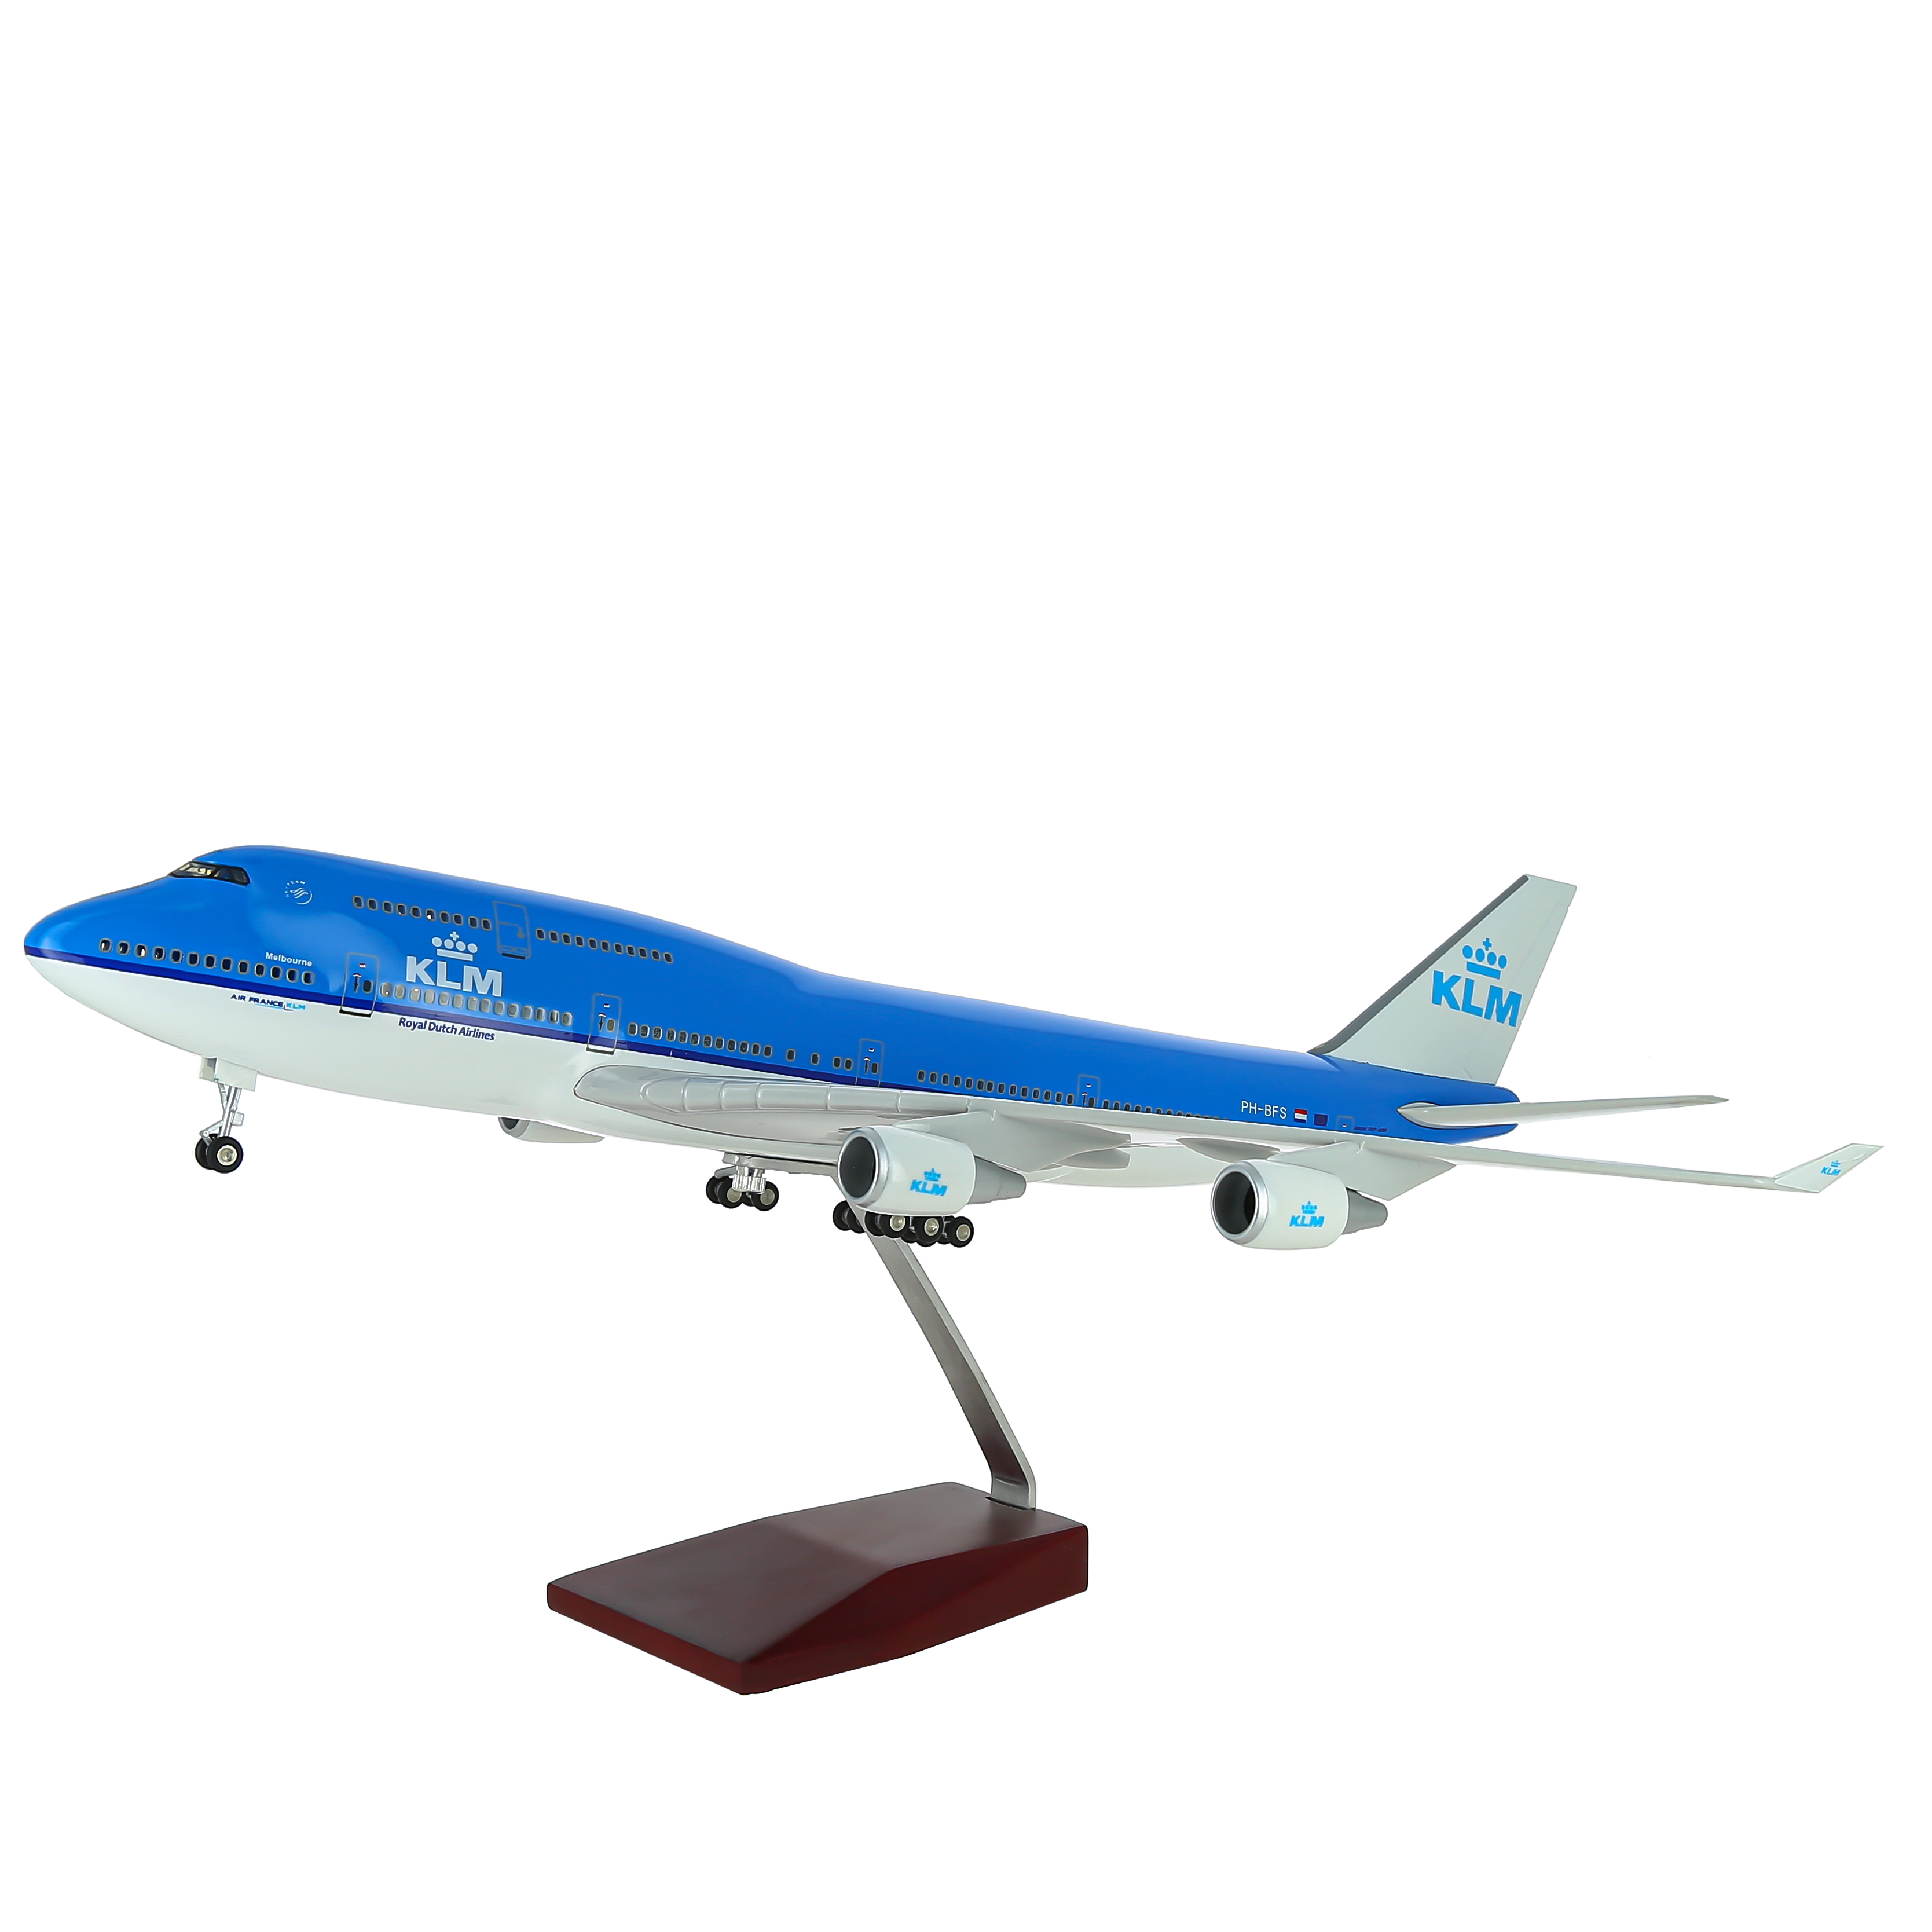     747  KLM,   .  47 . # 7 hobbyplus.ru